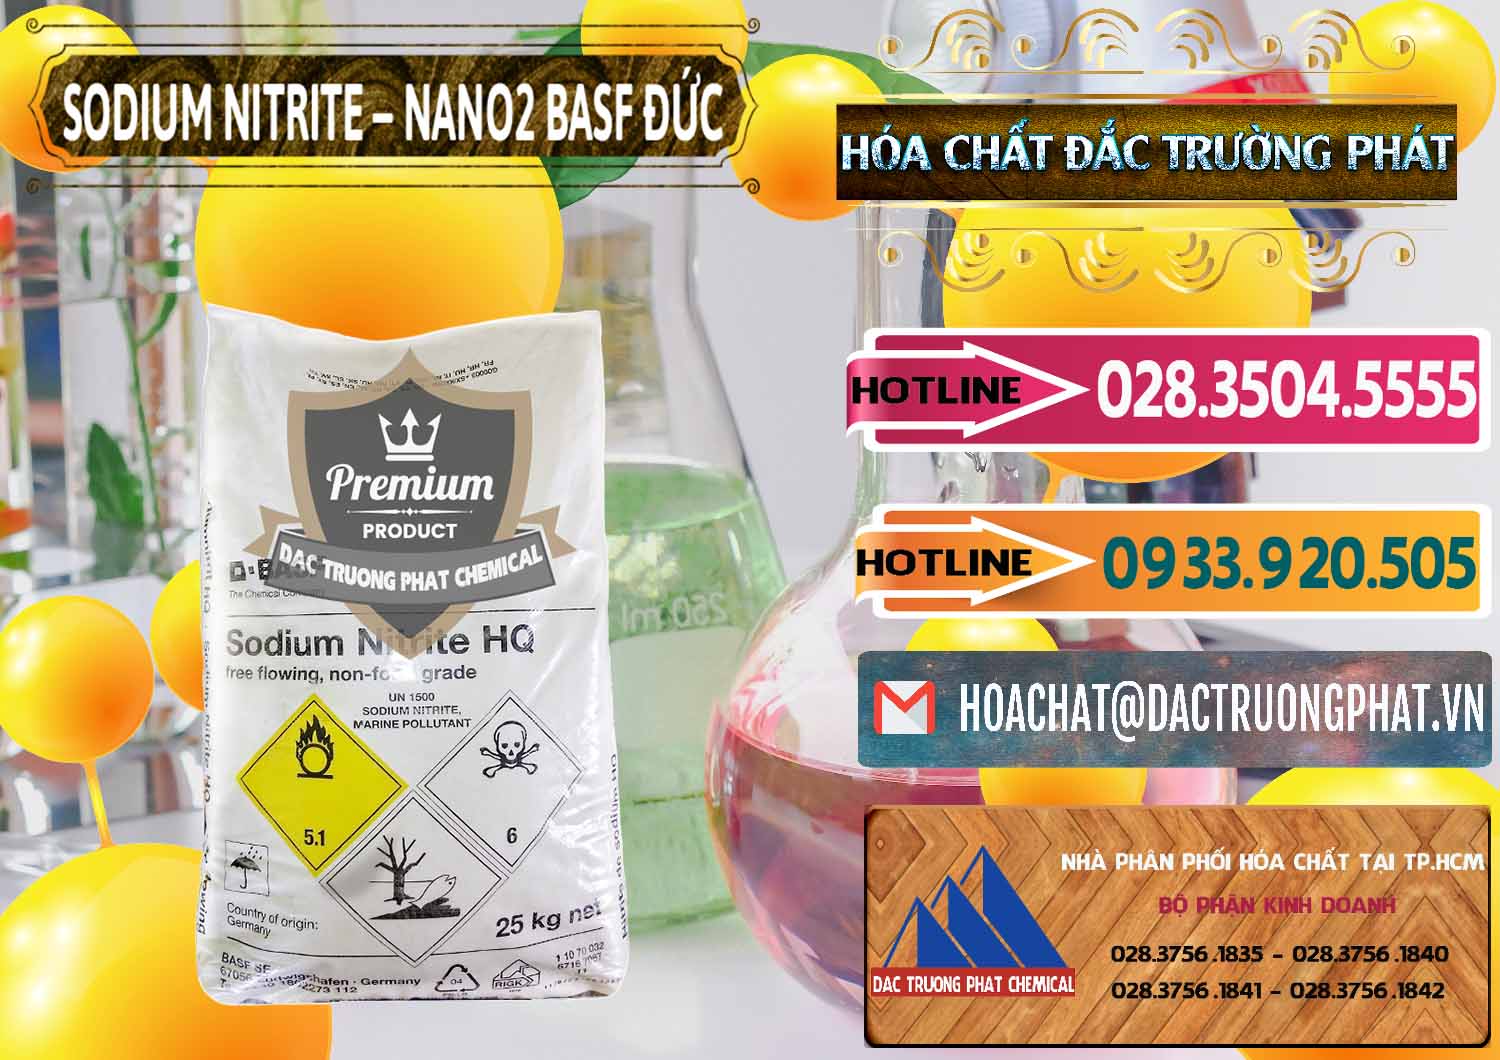 Cty chuyên bán và cung ứng Sodium Nitrite - NANO2 Đức BASF Germany - 0148 - Cty cung ứng _ phân phối hóa chất tại TP.HCM - dactruongphat.vn